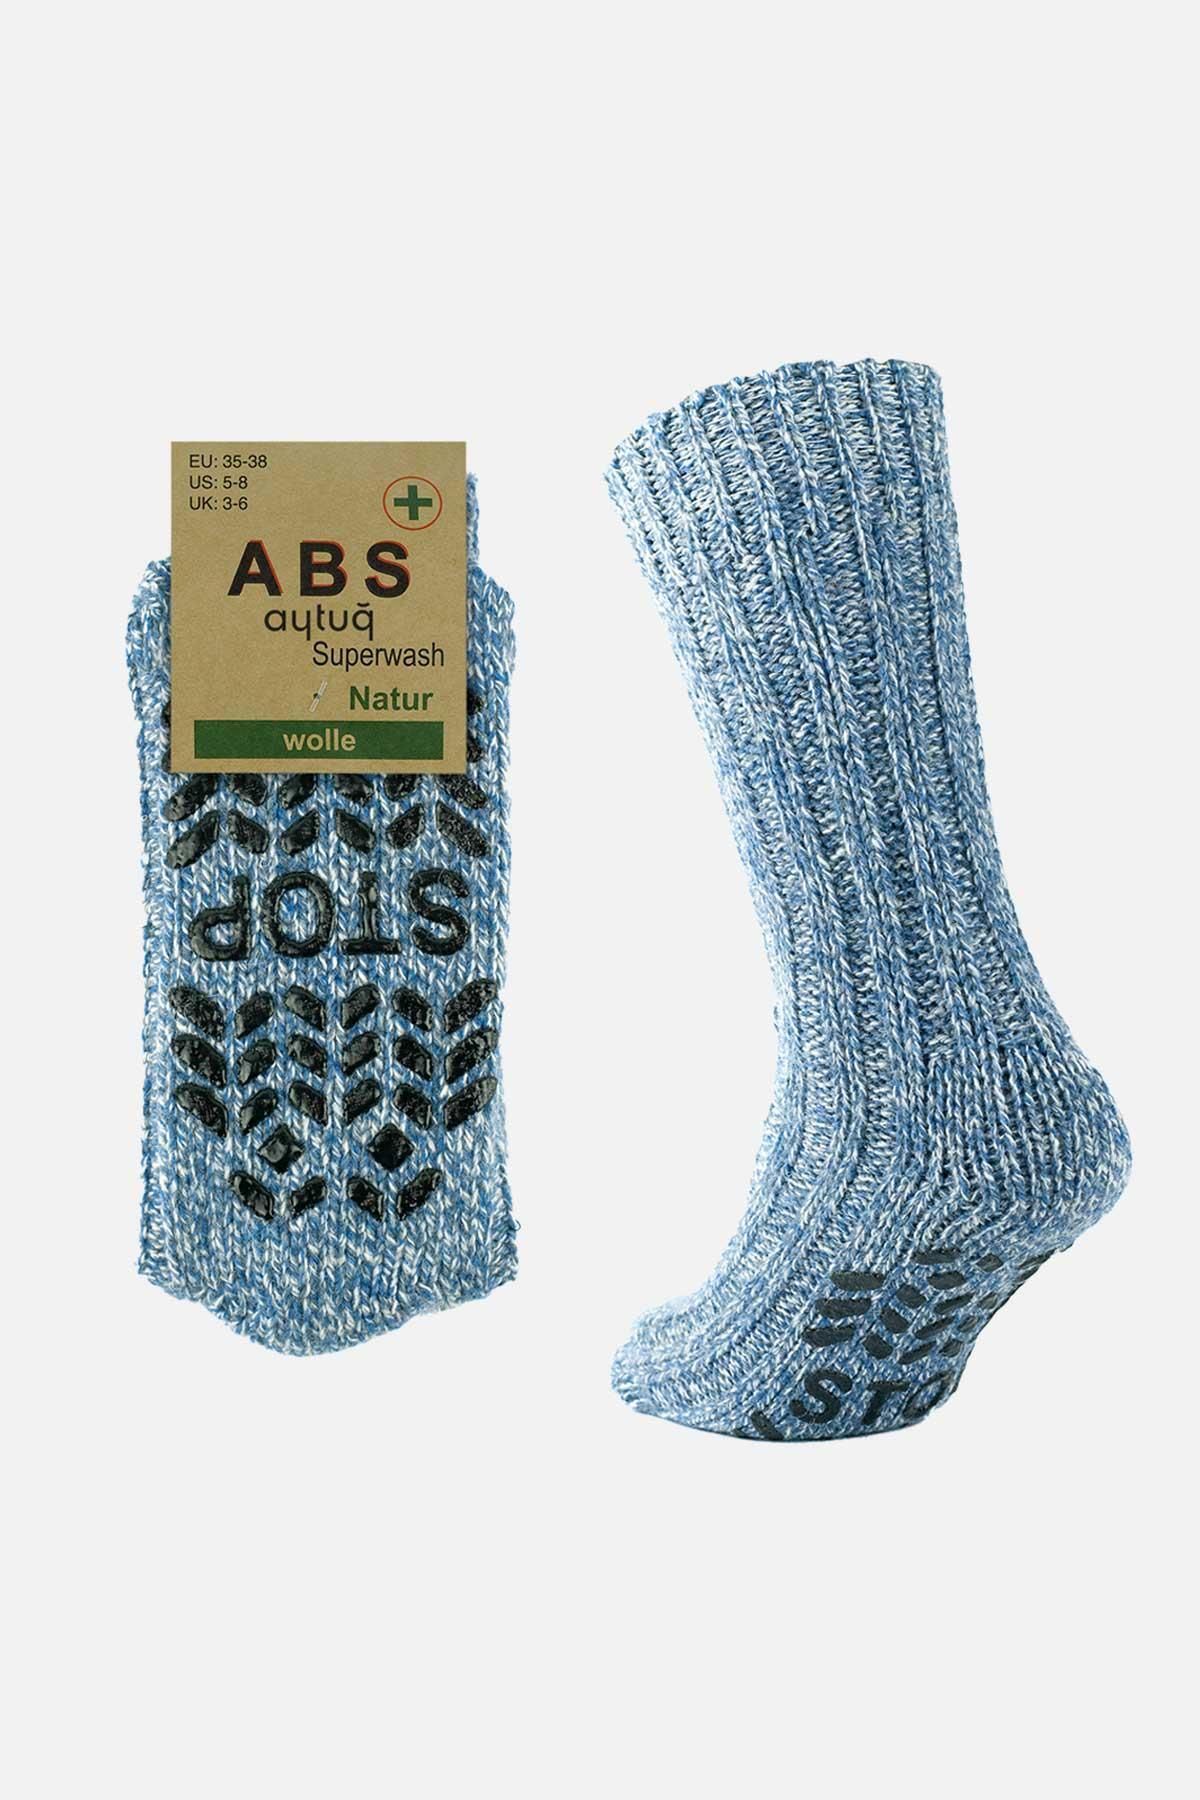 Aytuğ Kadın Merino Yünü Cold Blocker Kışlık Mavi Kaydırmaz Tabanlı Soket Çorap